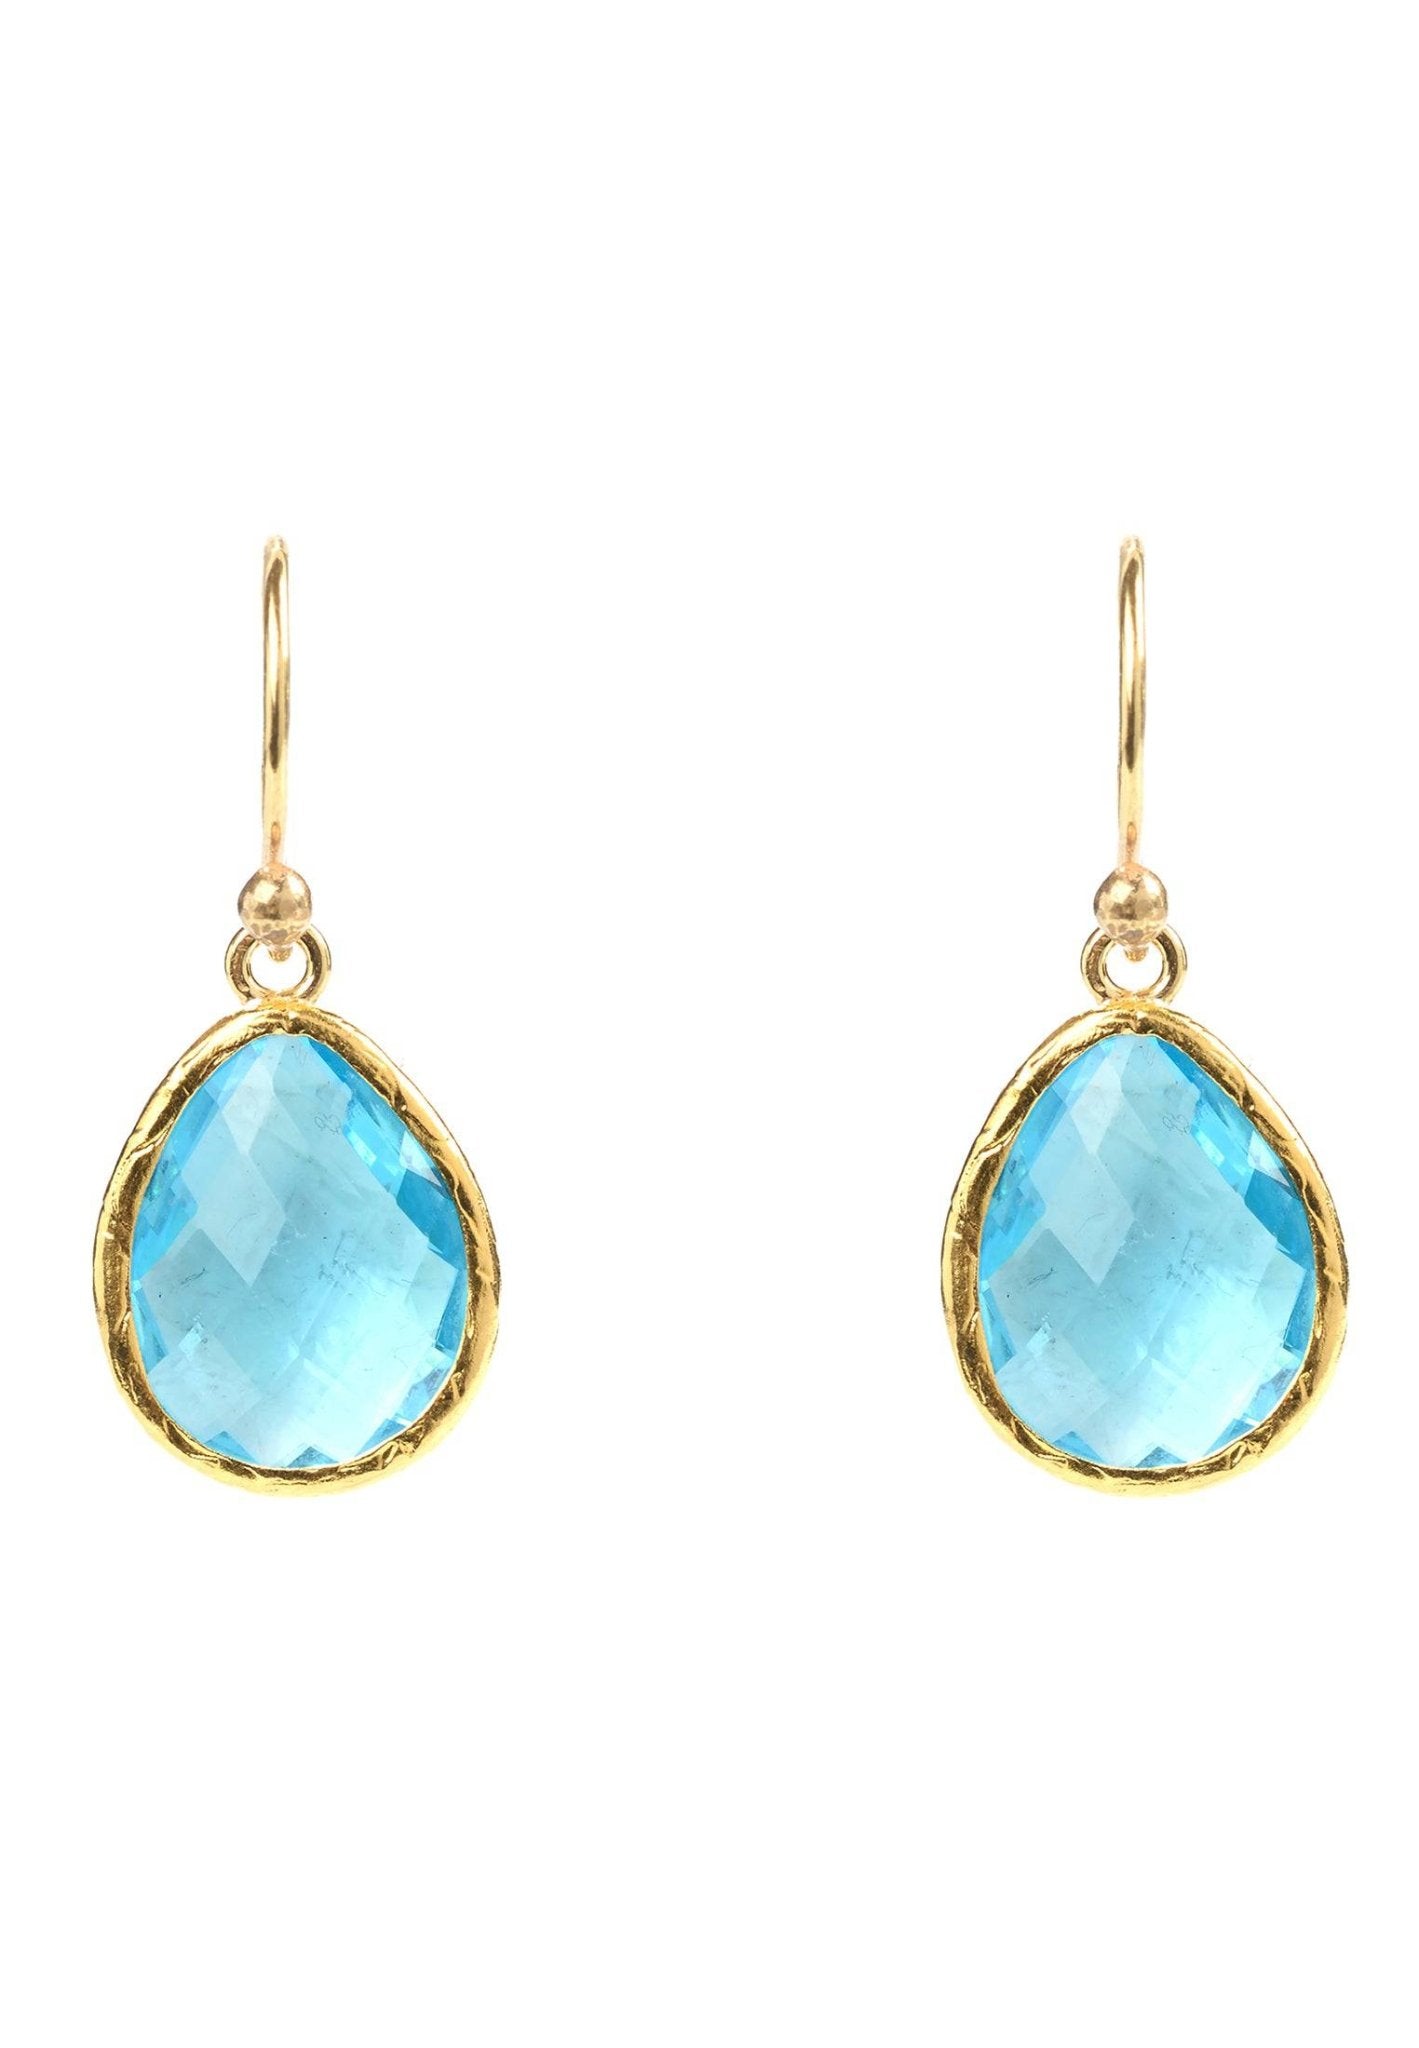 Petite Drop Earrings Blue Topaz Hydro Gold - LATELITA Earrings